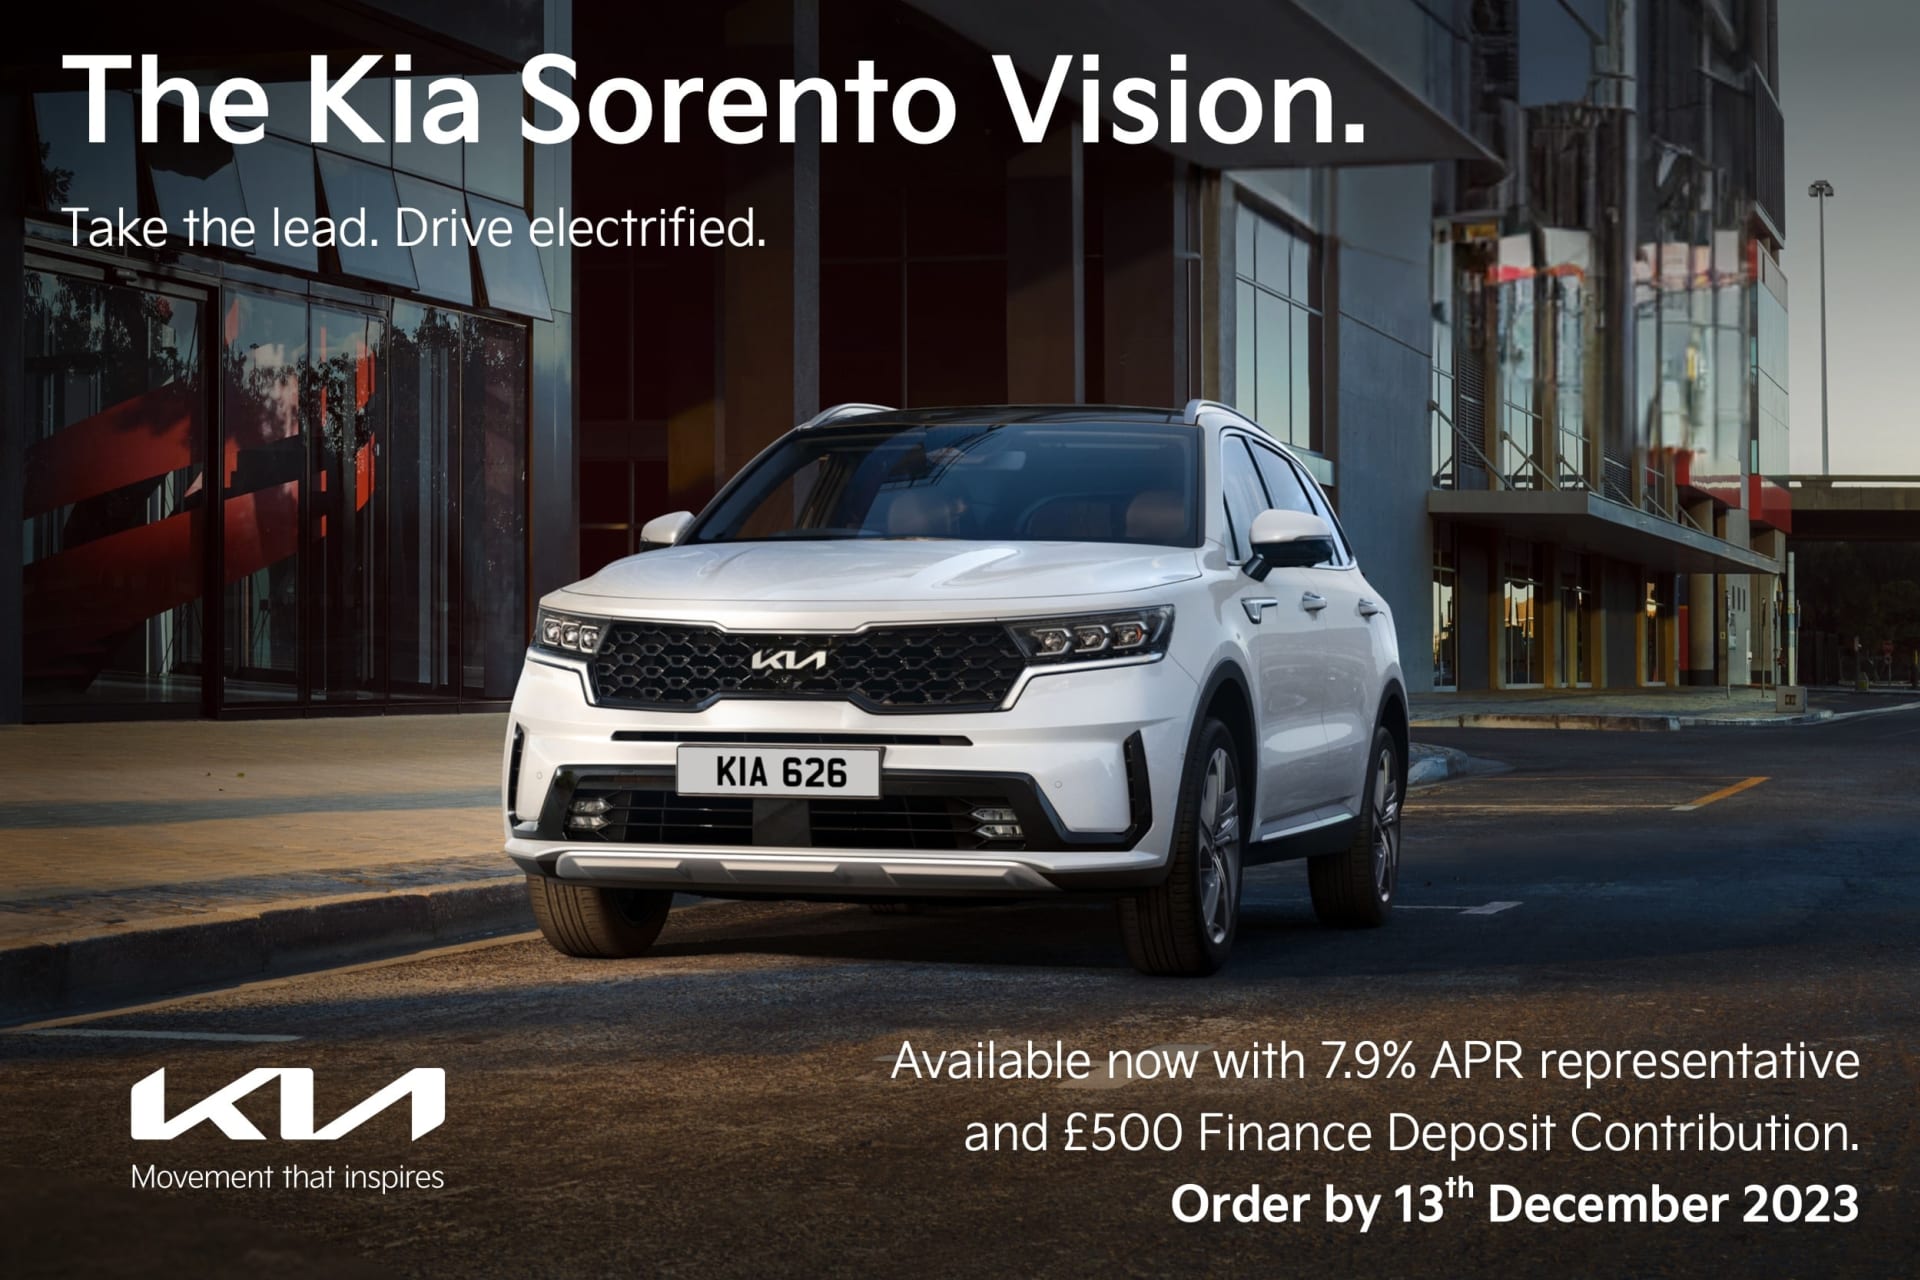 The Kia Sorento Vision